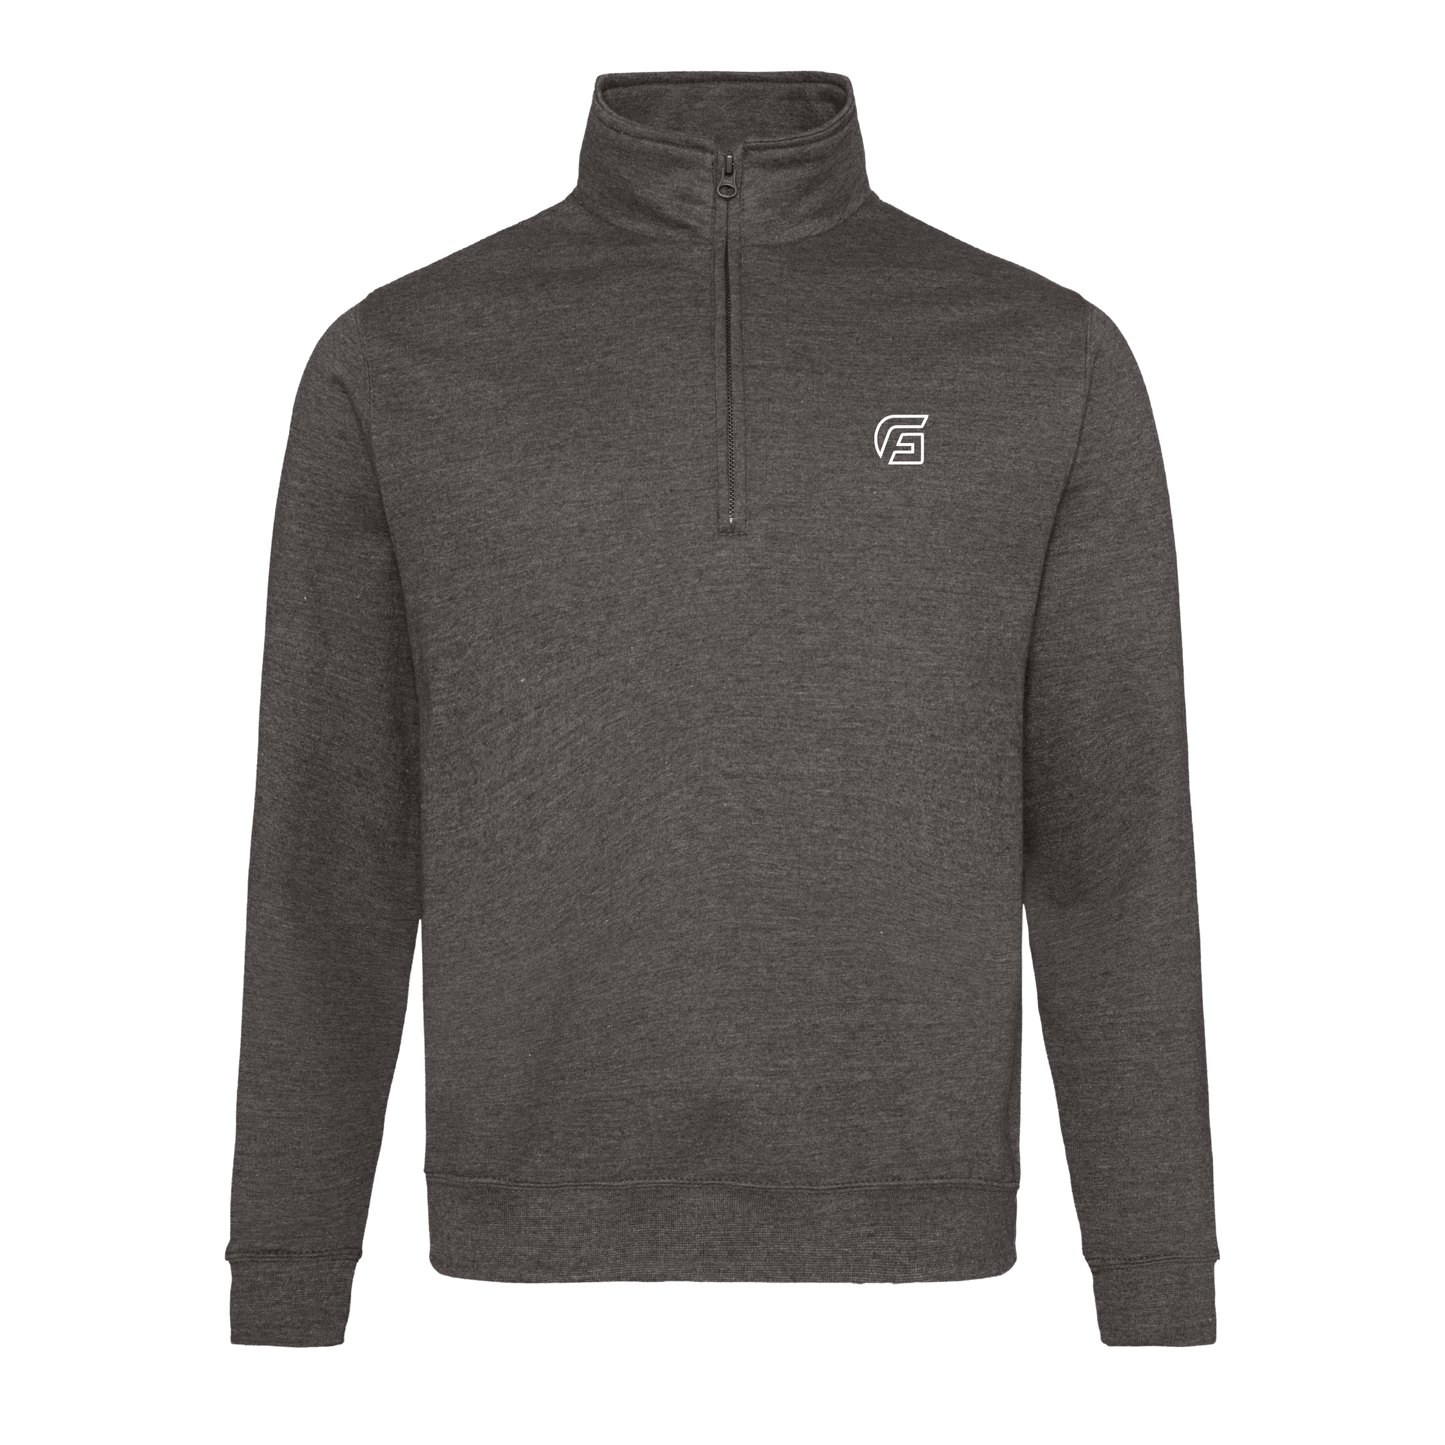 Focusgolf Swing Strong Men's Graphite Grey Qtr Zip Sweatshirt